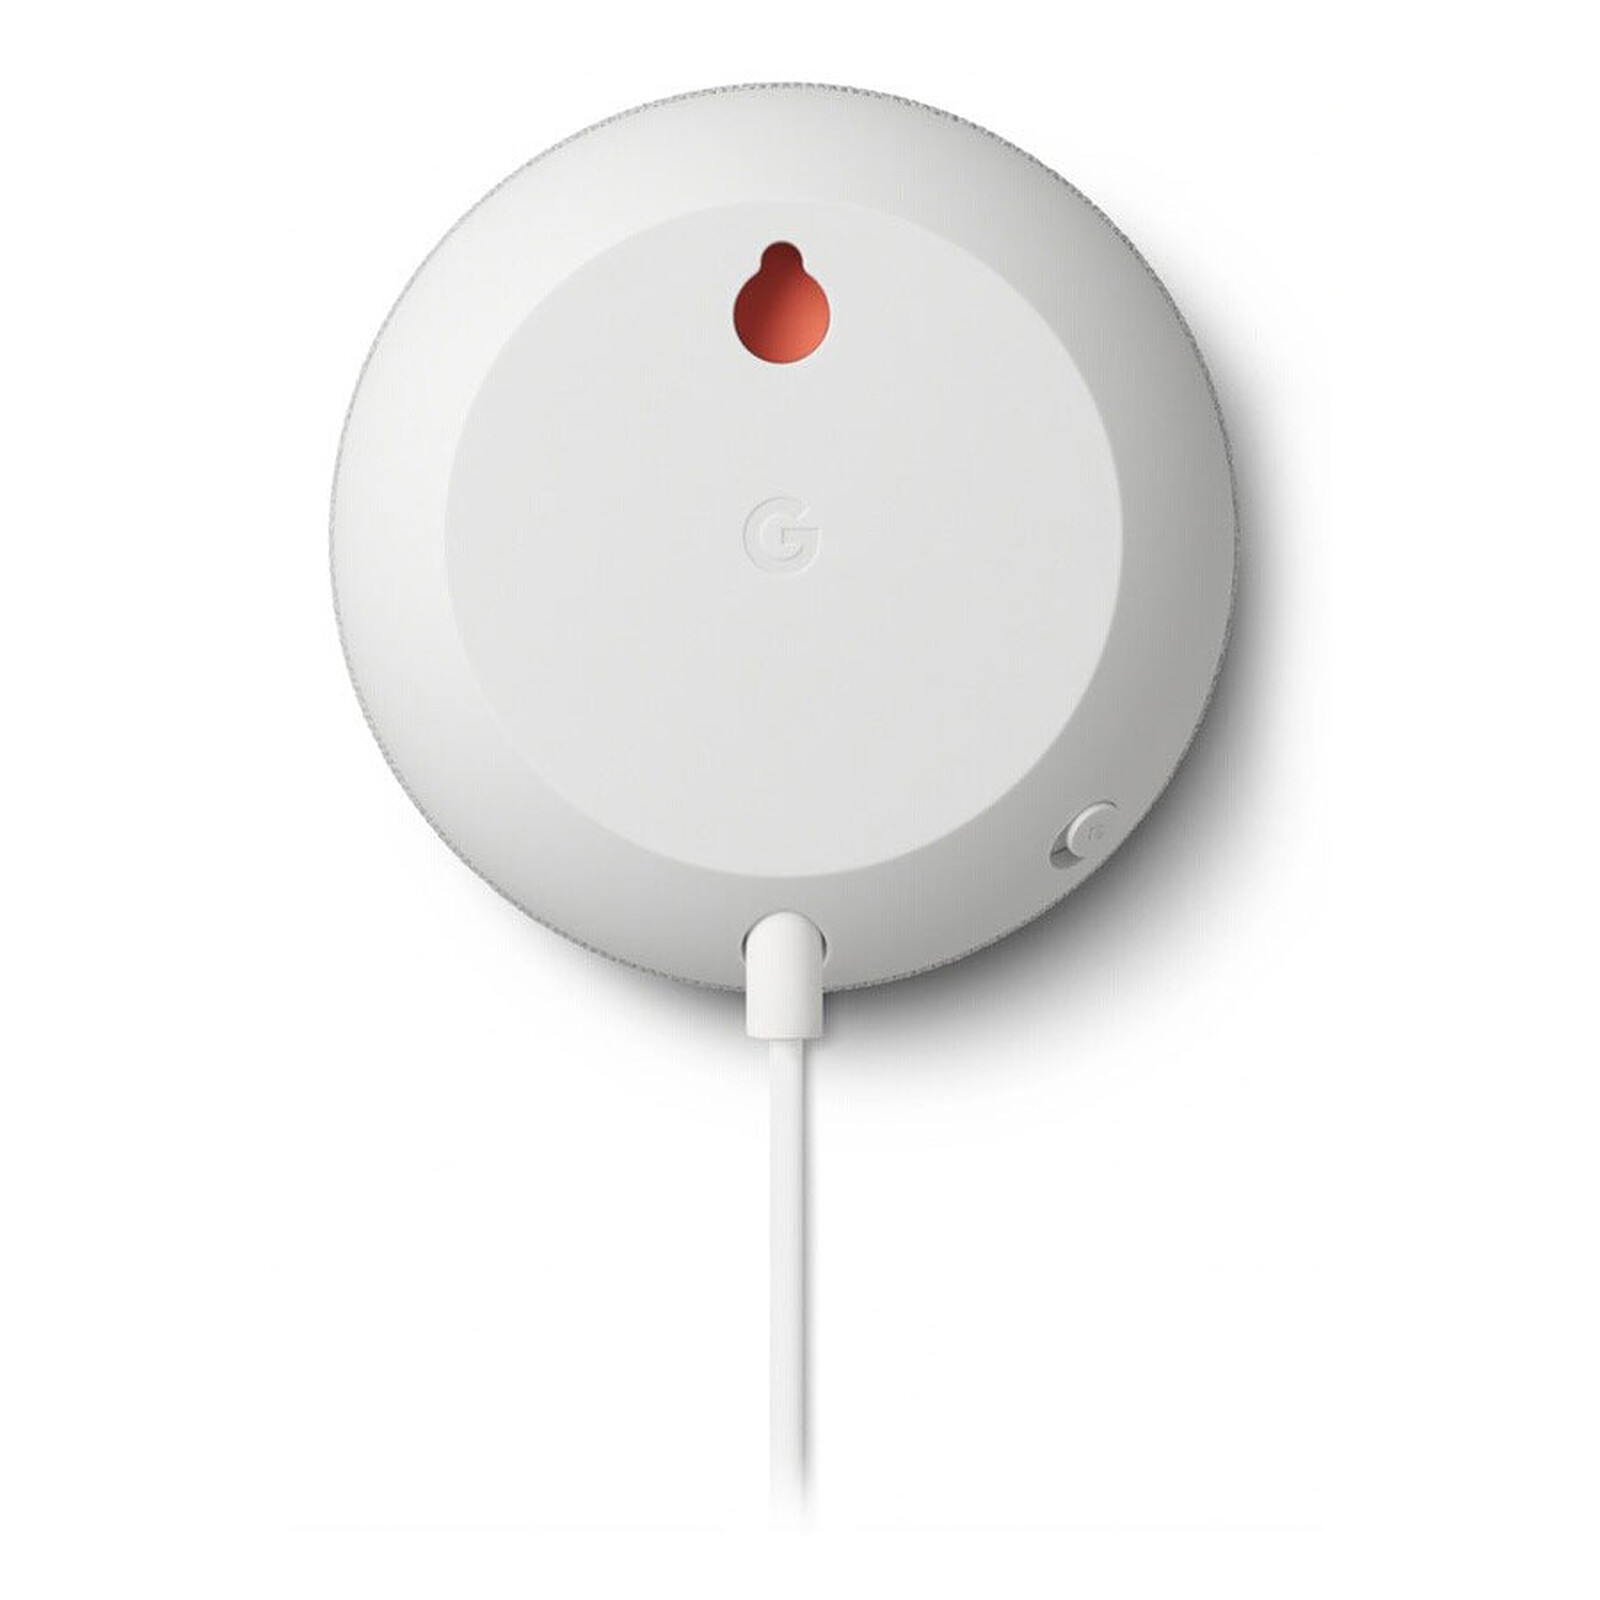 Google Home Nest Mini Pebble - Google